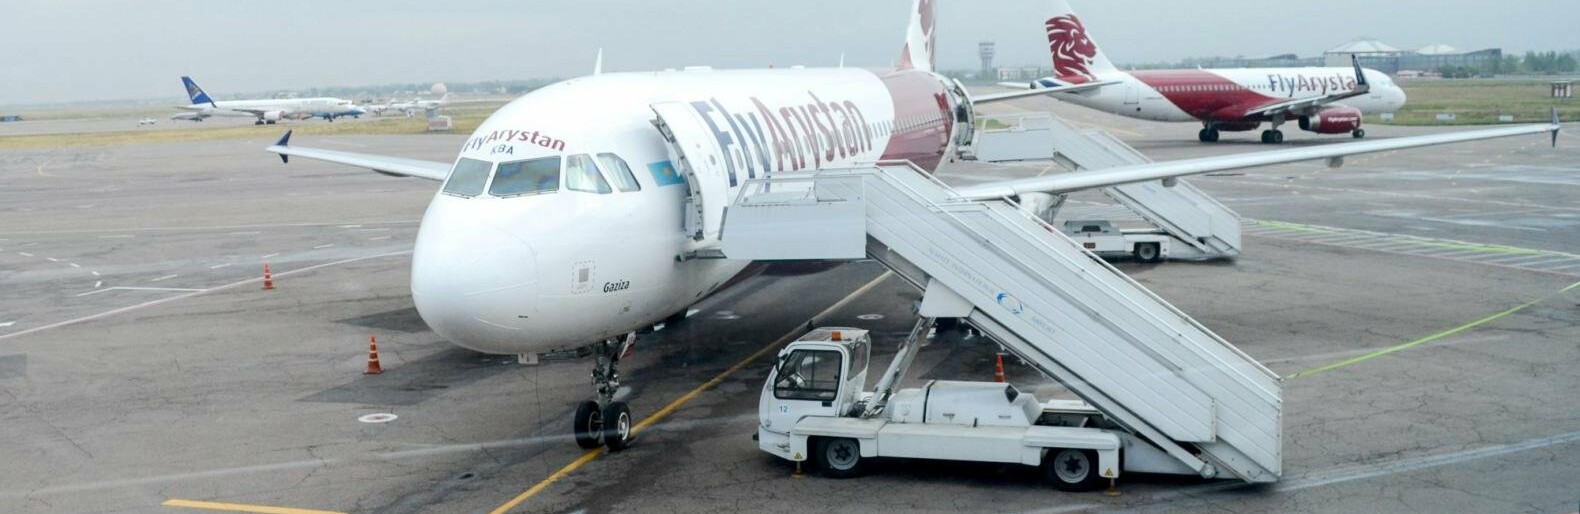 Авиабилеты туркестан семей турция самолет билет